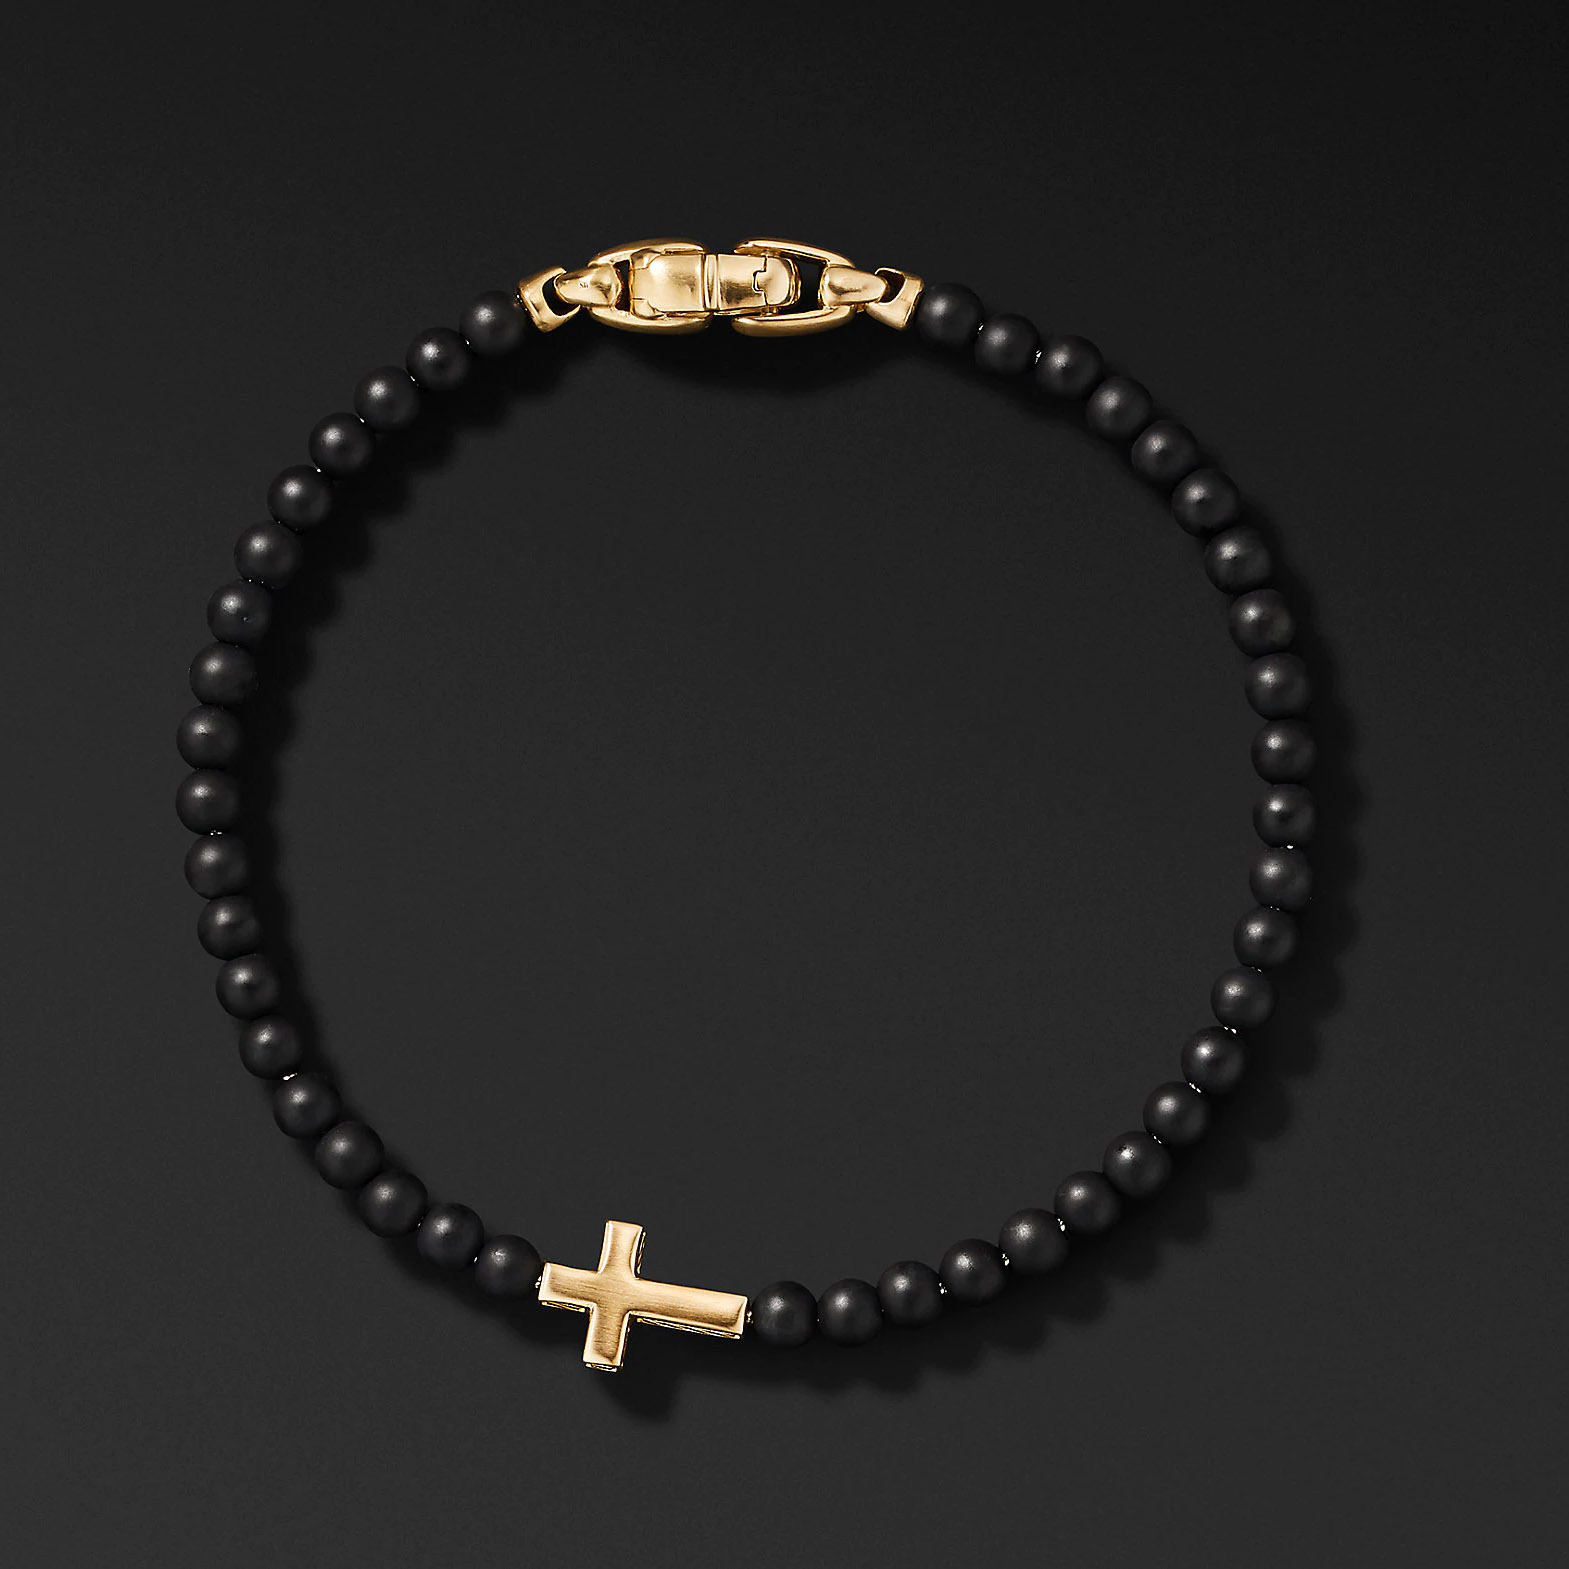 Wholesale OEM ODM 18-karat Yellow Gold bracelet OEM/ODM Jewelry with Black Onyx custom design your jewelry factory